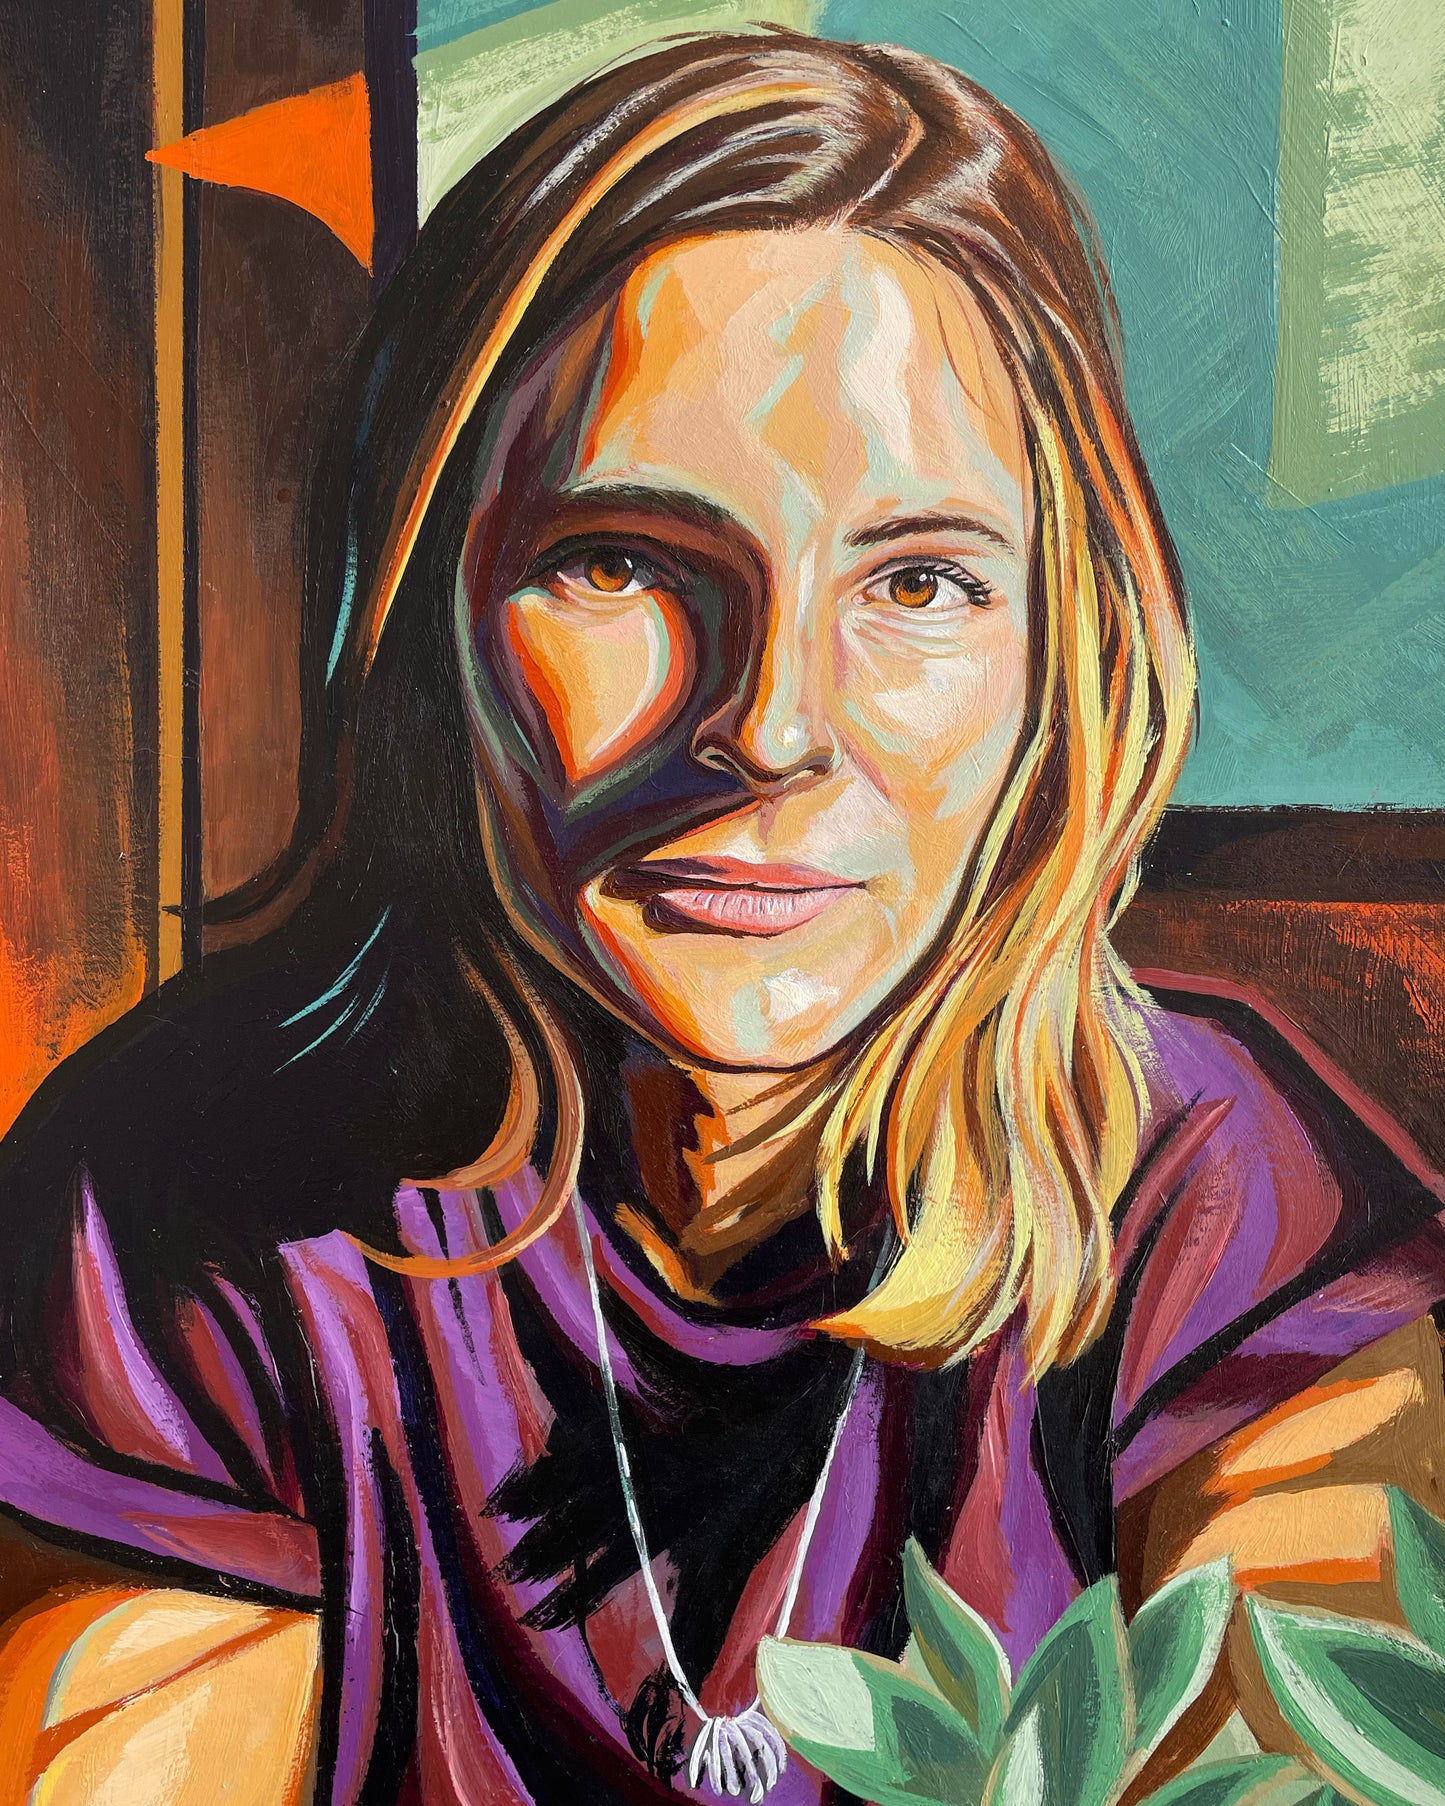 Katie's Portraits Commission: Down Payment (8"x10")